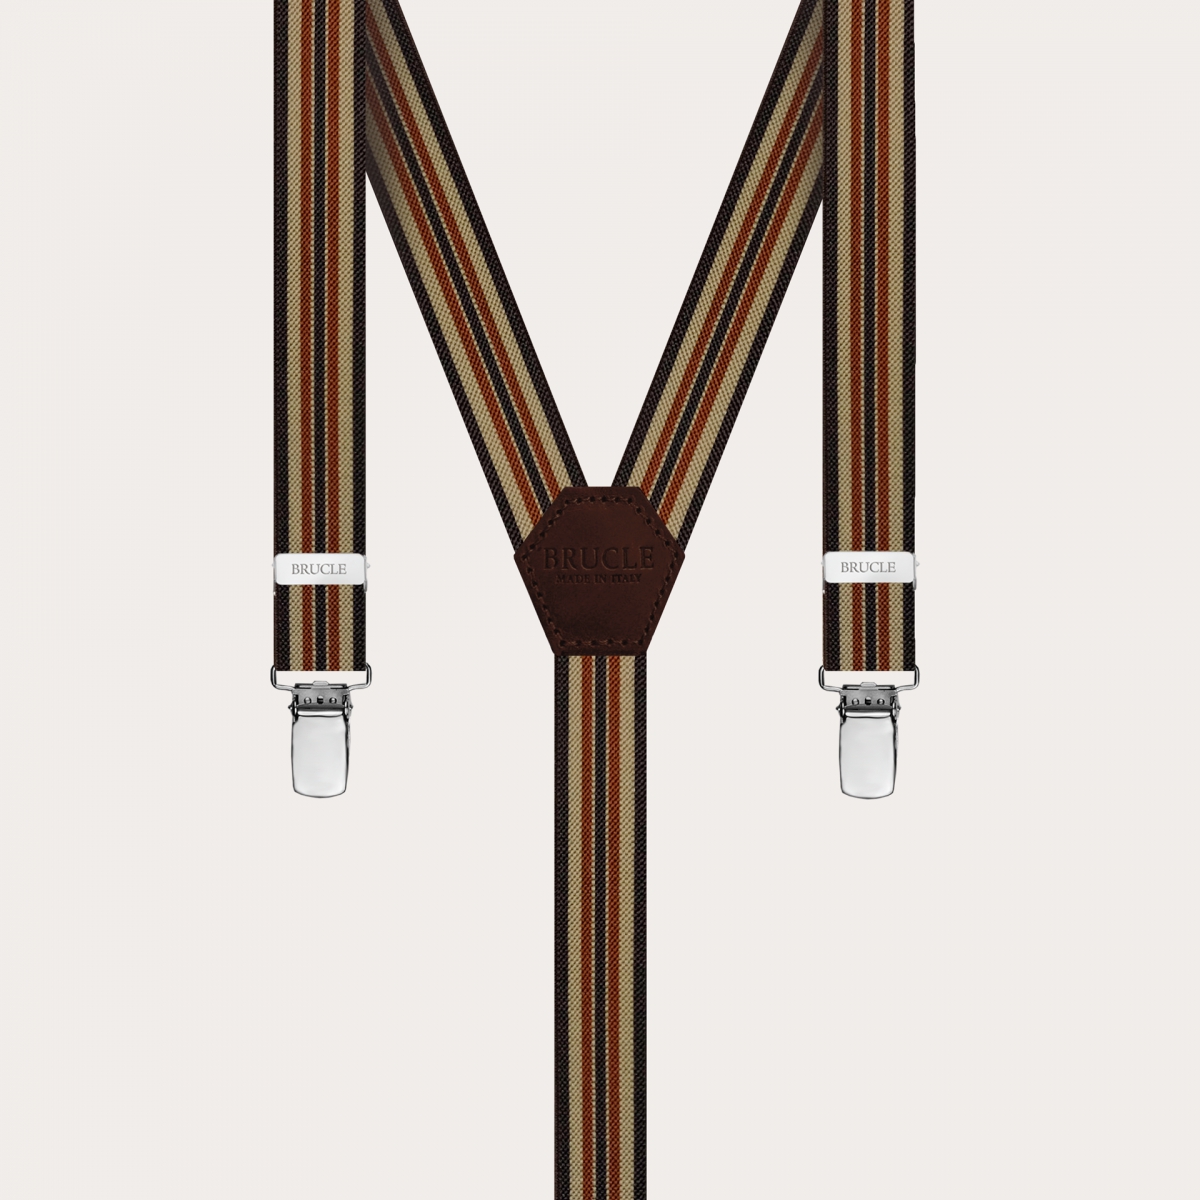 BRUCLE Y-förmige dünne Hosenträger für Männer und Frauen mit Streifen, braun und khaki